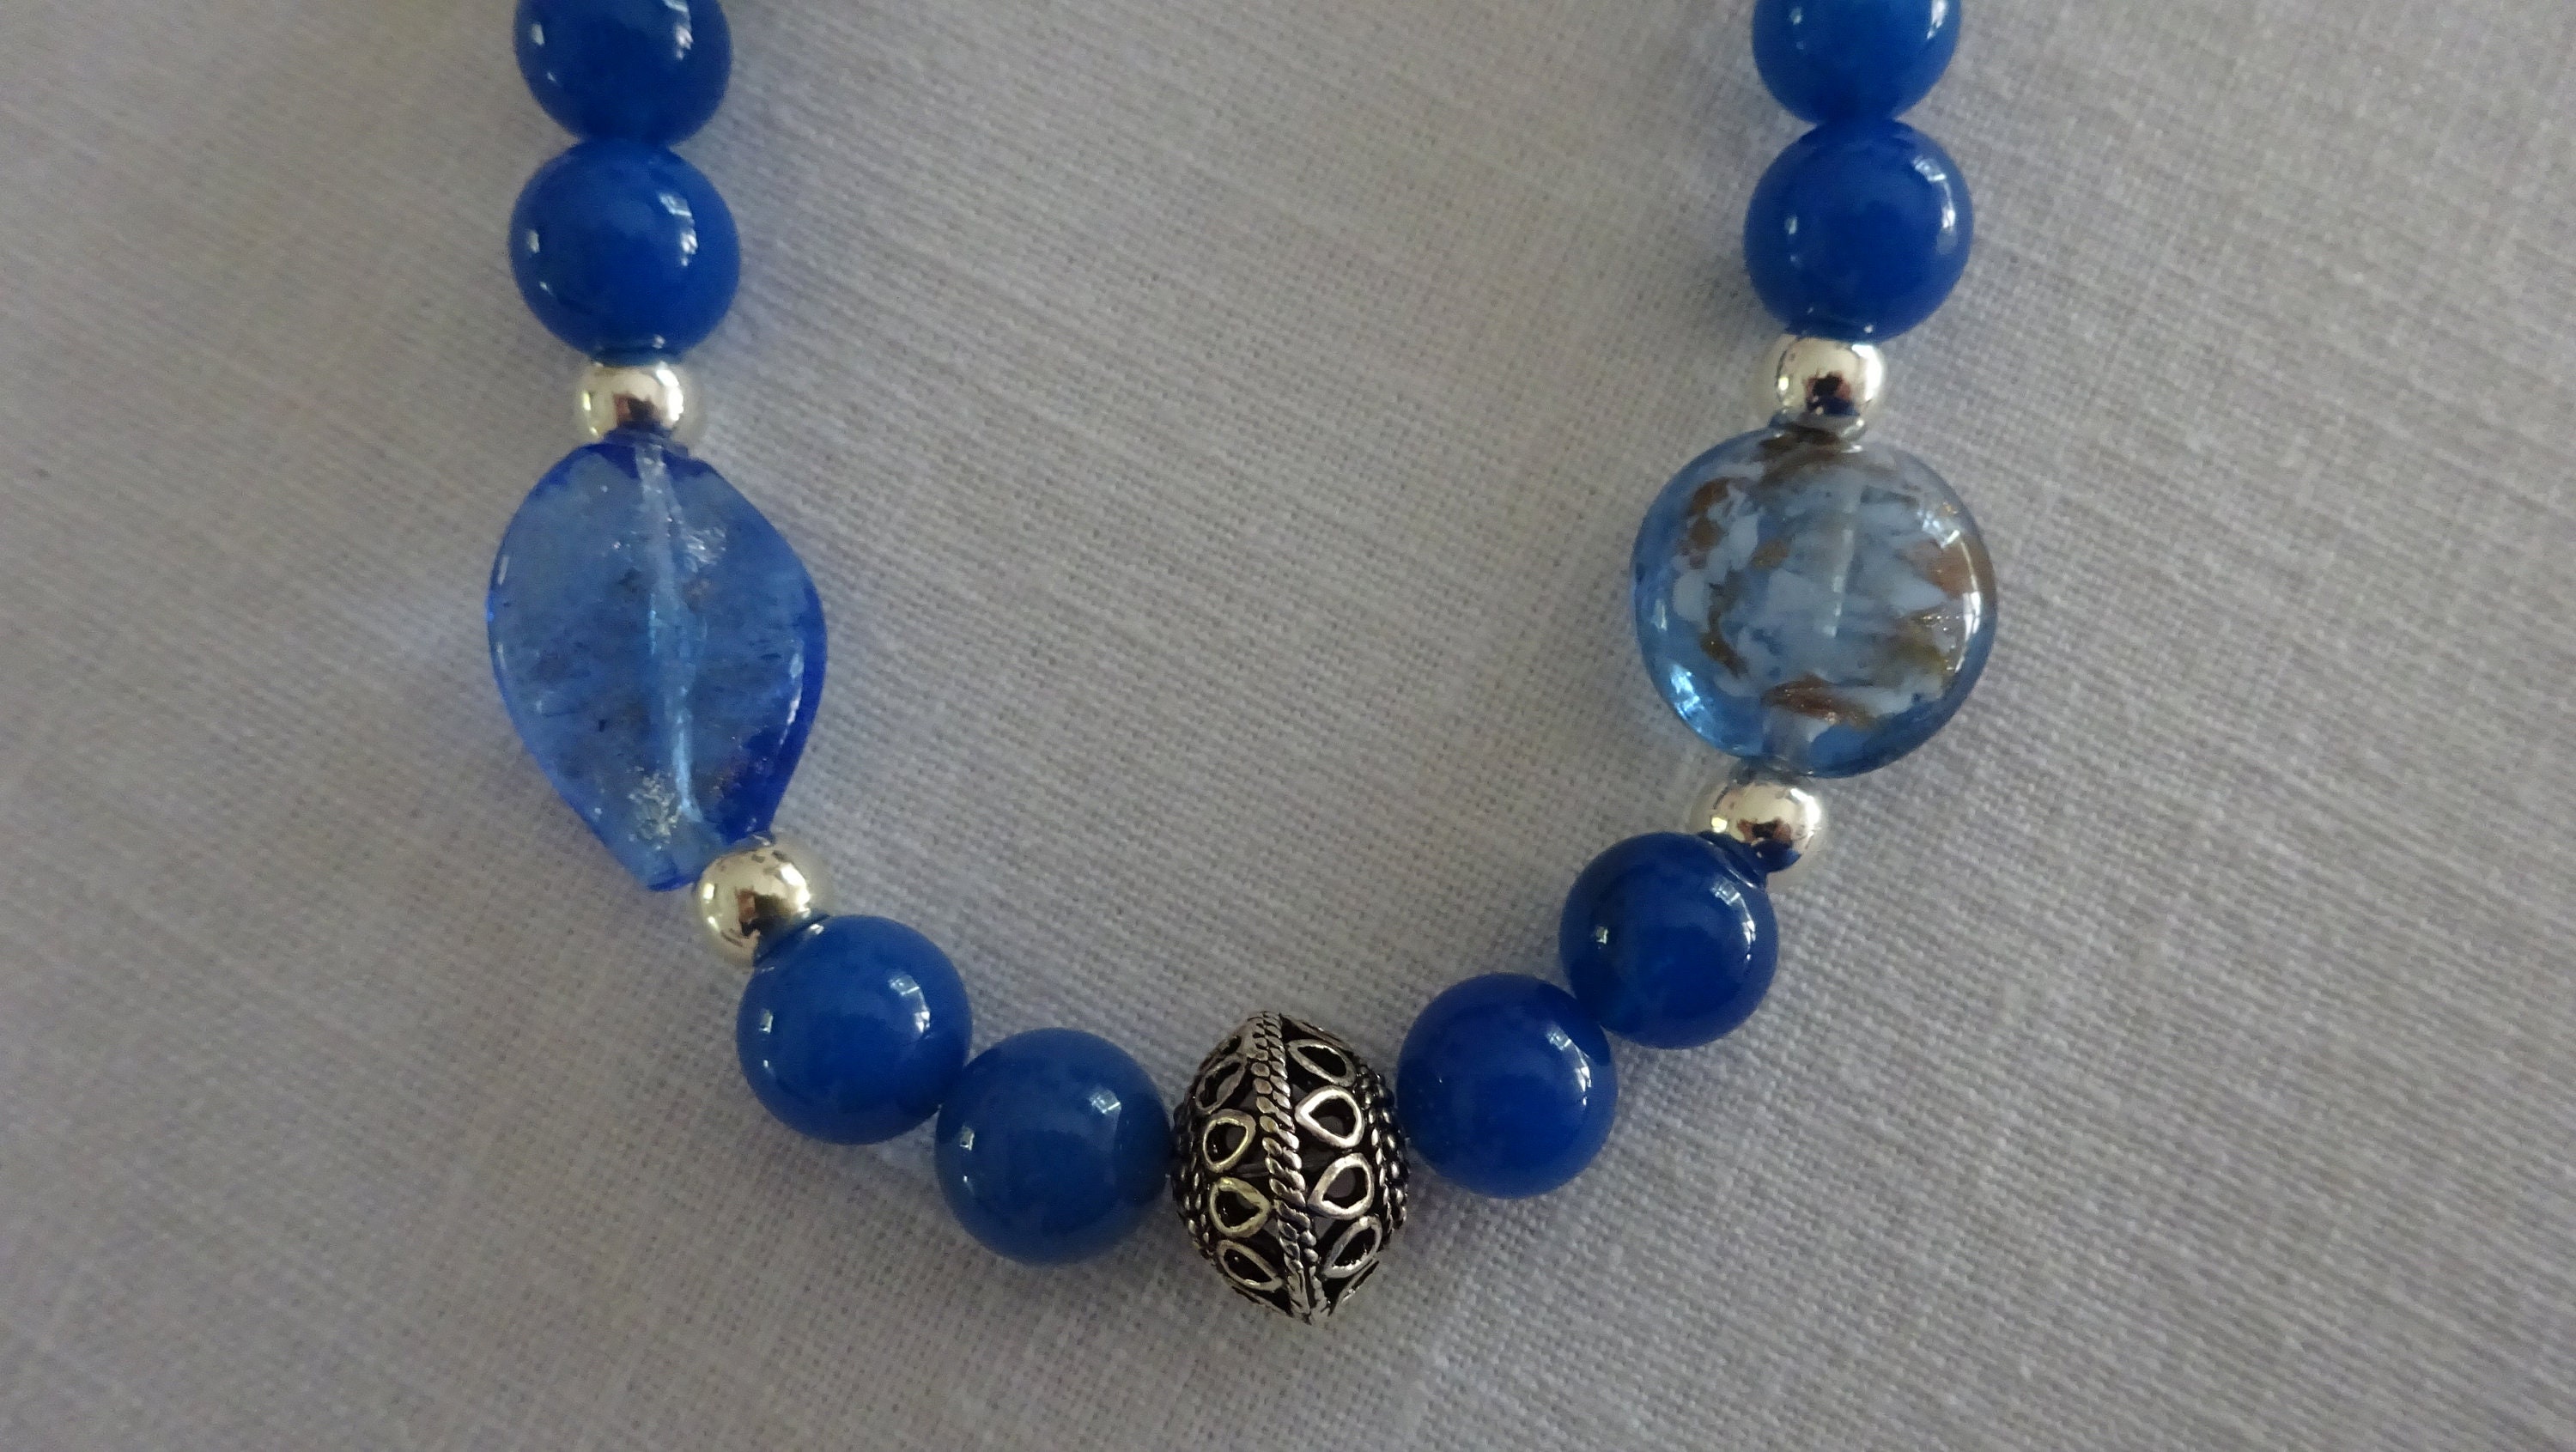 Cobalt Blue jade Quartz Handmade Glass and Silver Beaded Necklace - Etsy